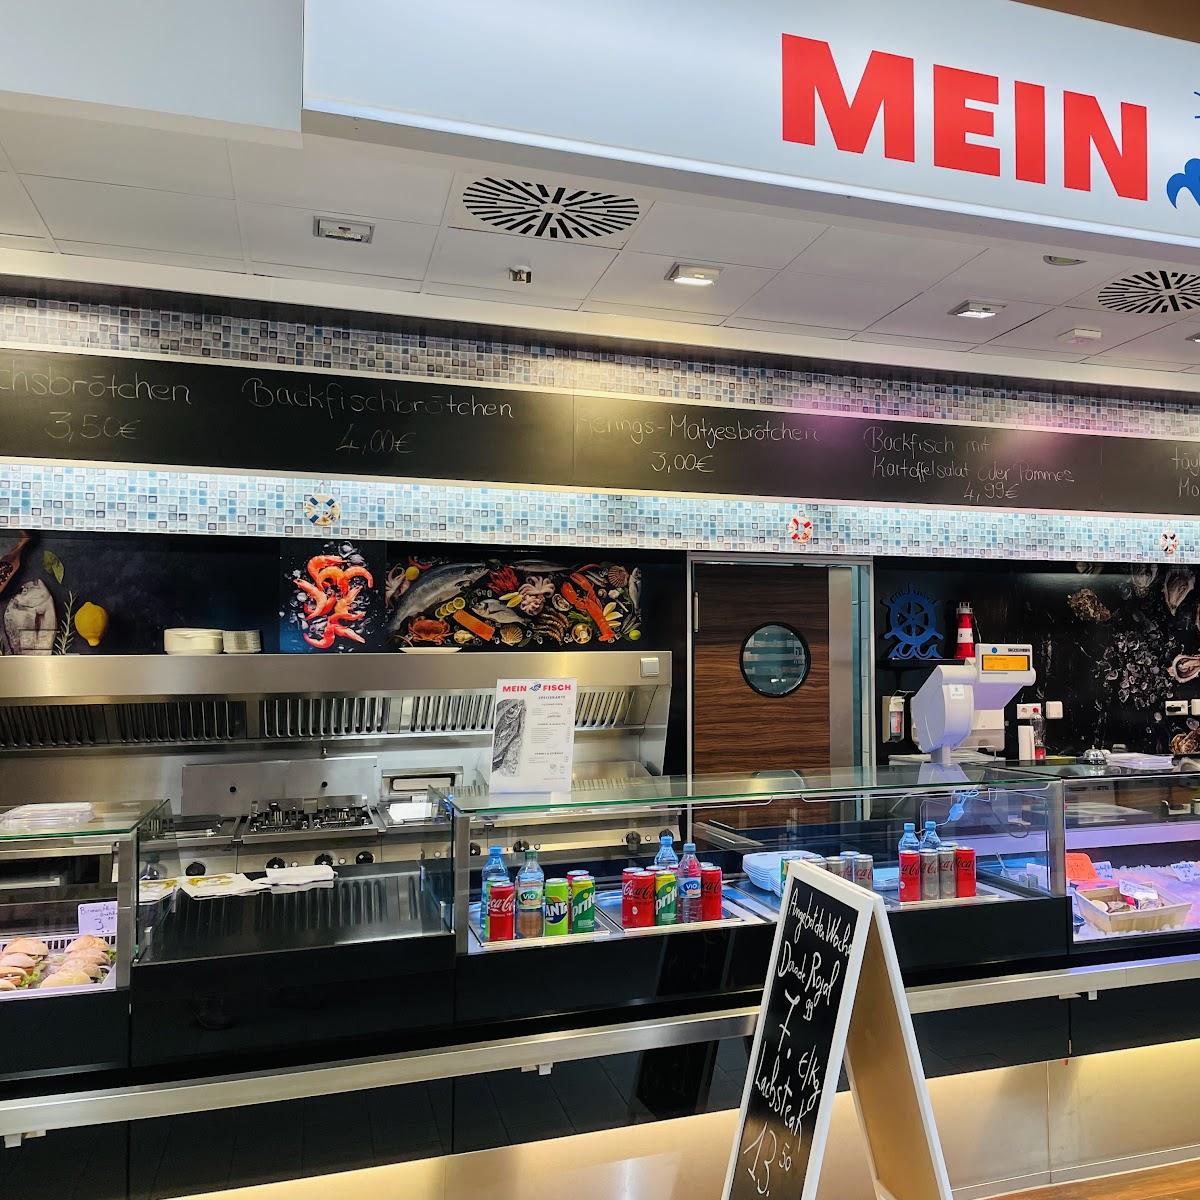 Restaurant "MEIN FISCH" in Wendlingen am Neckar